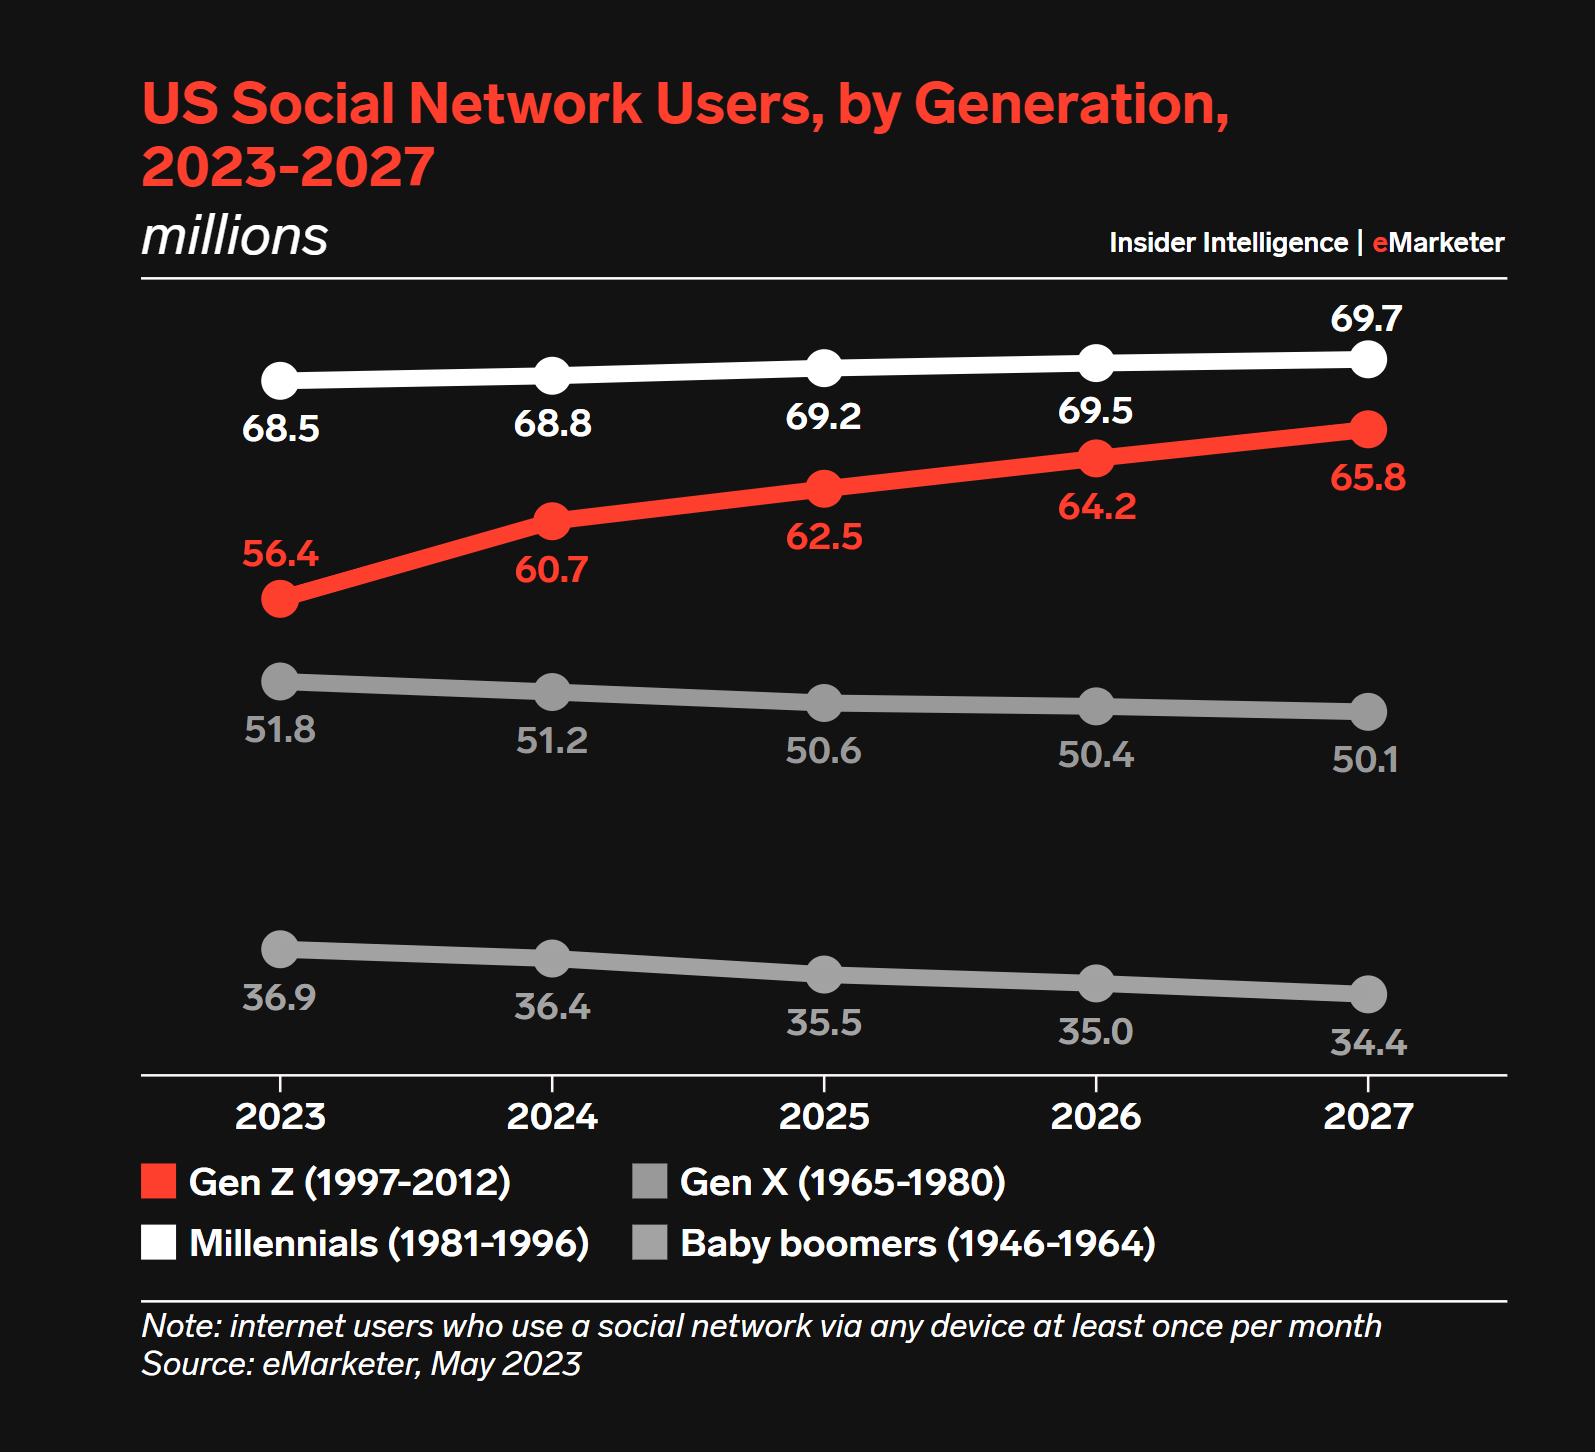 MeWe Raises $4.8 Million, Launches Next-Gen Social Network